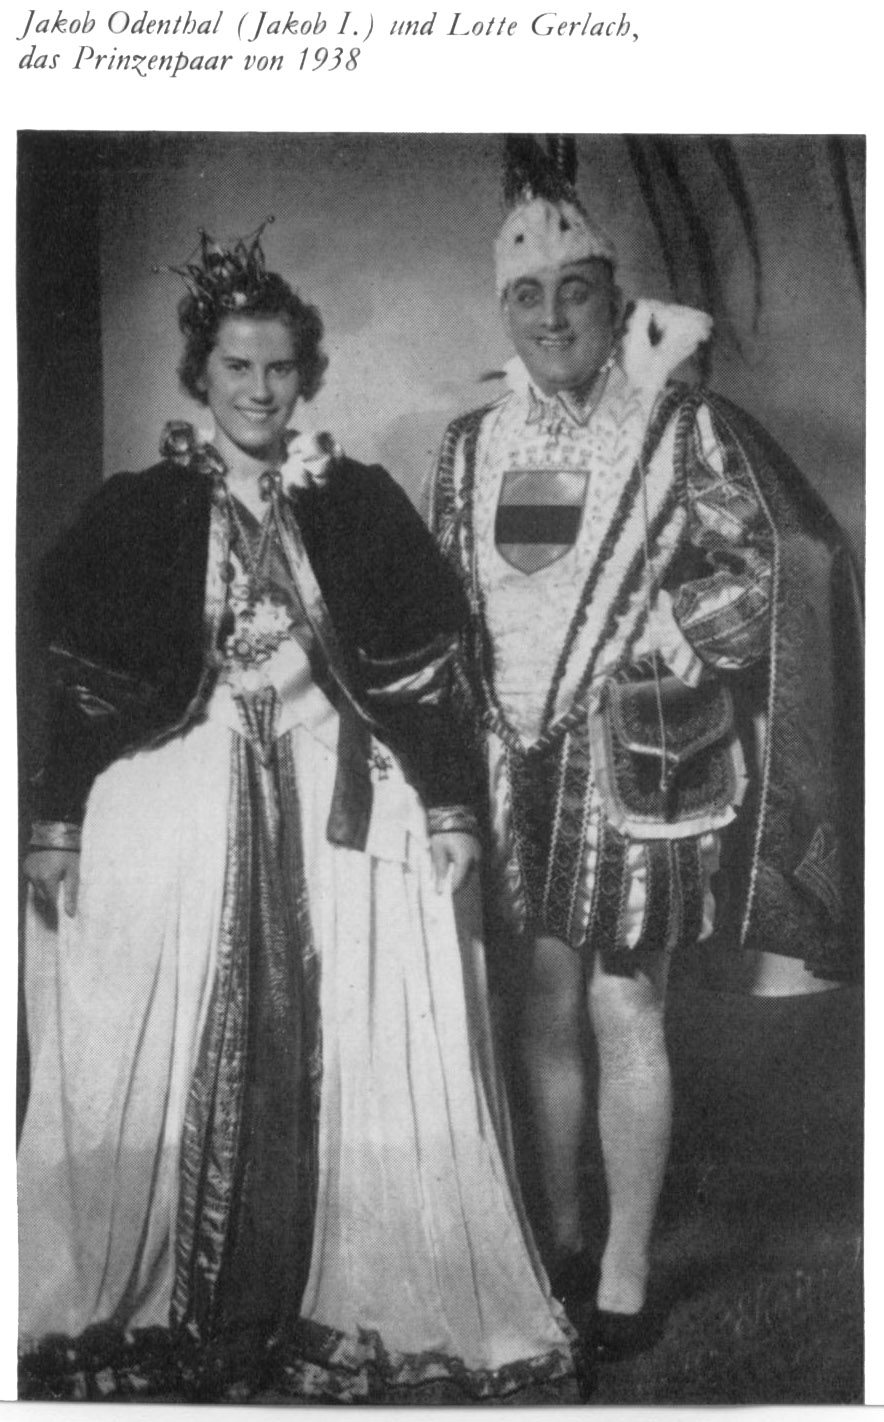 Prinzenpaar 1938/39